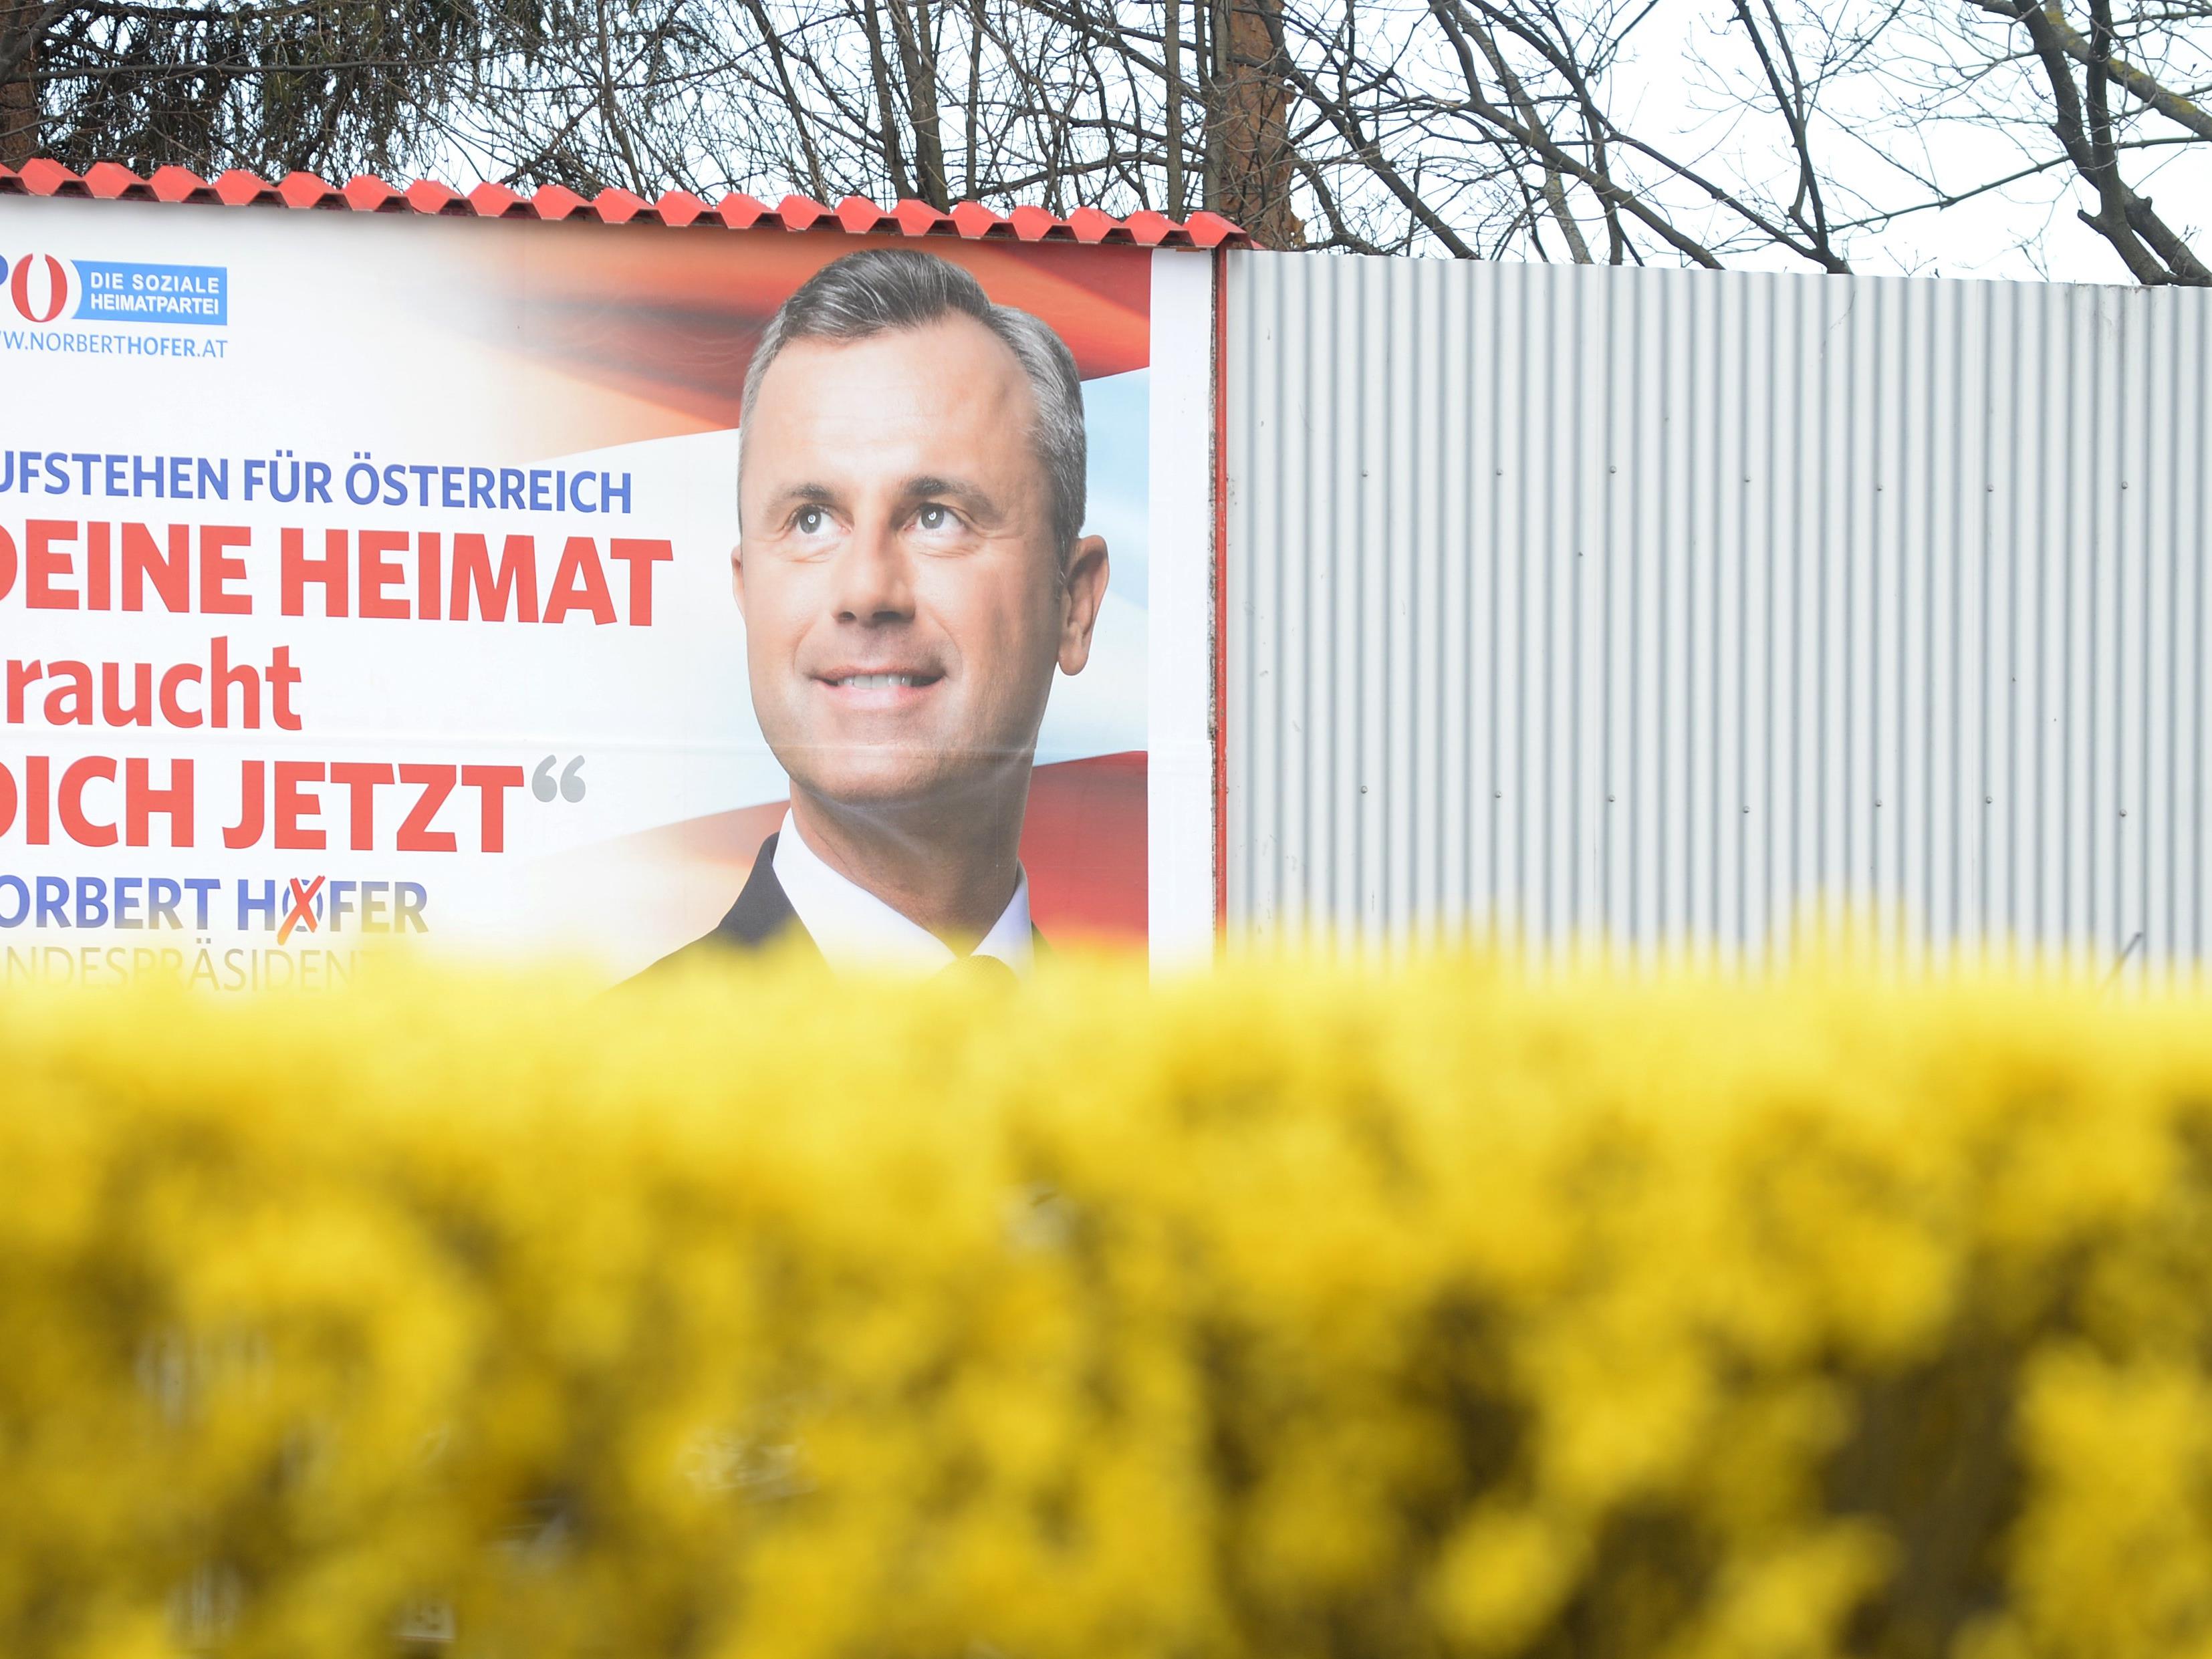 Die FPÖ gab für den Präsidentschaftswahlkampf von Norbert Hofer 3,4 Millionen Euro aus.